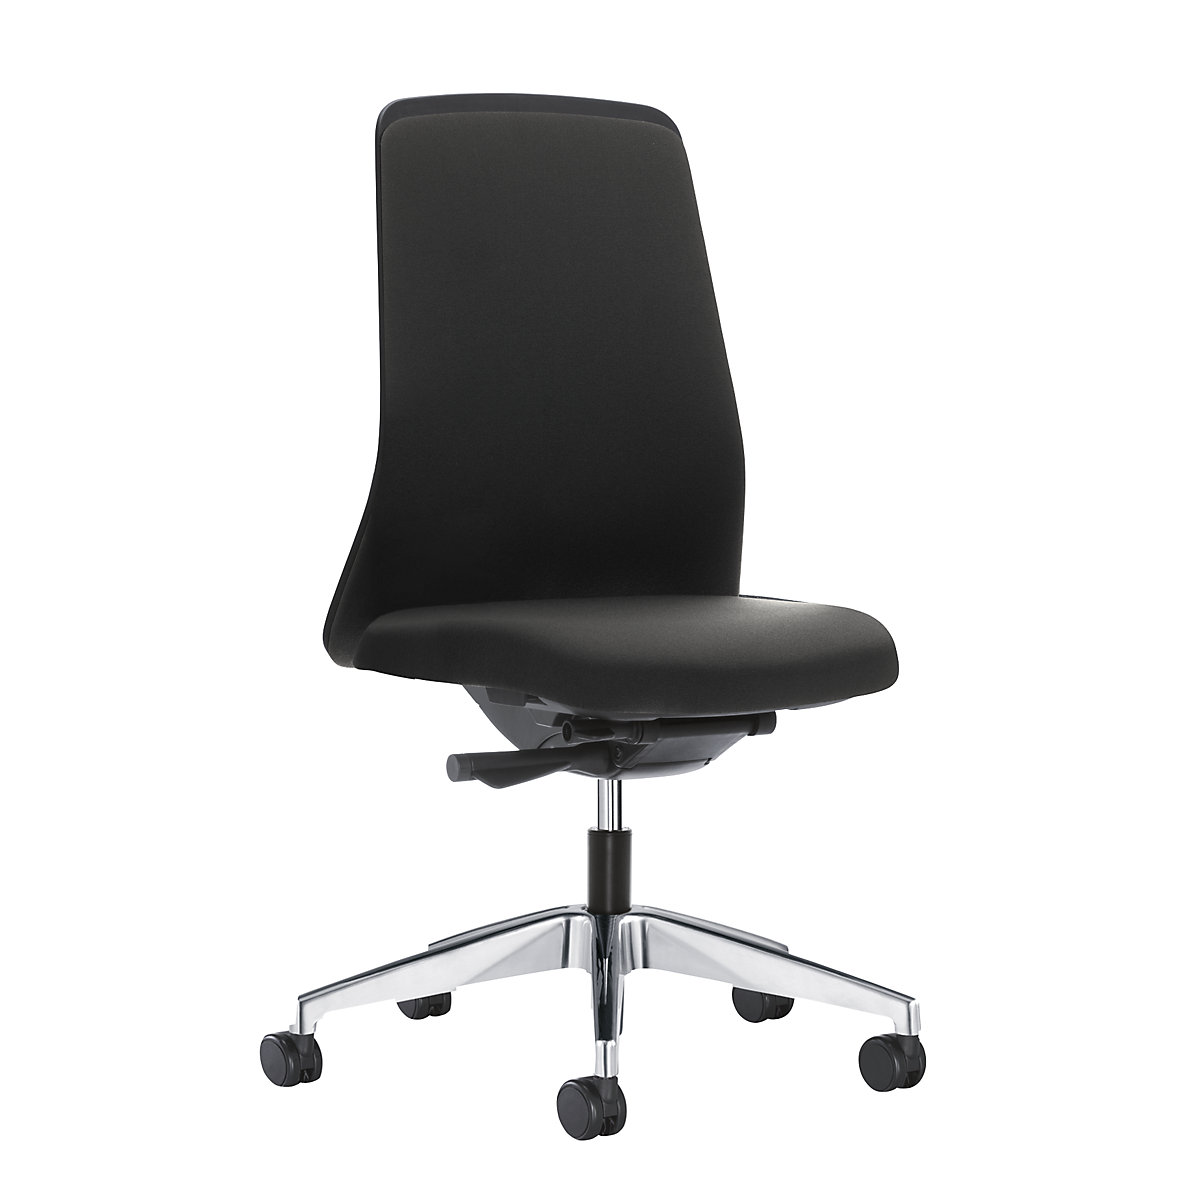 Udobna okretna stolica EVERY, naslon za leđa za opuštanje u crnoj boji - interstuhl